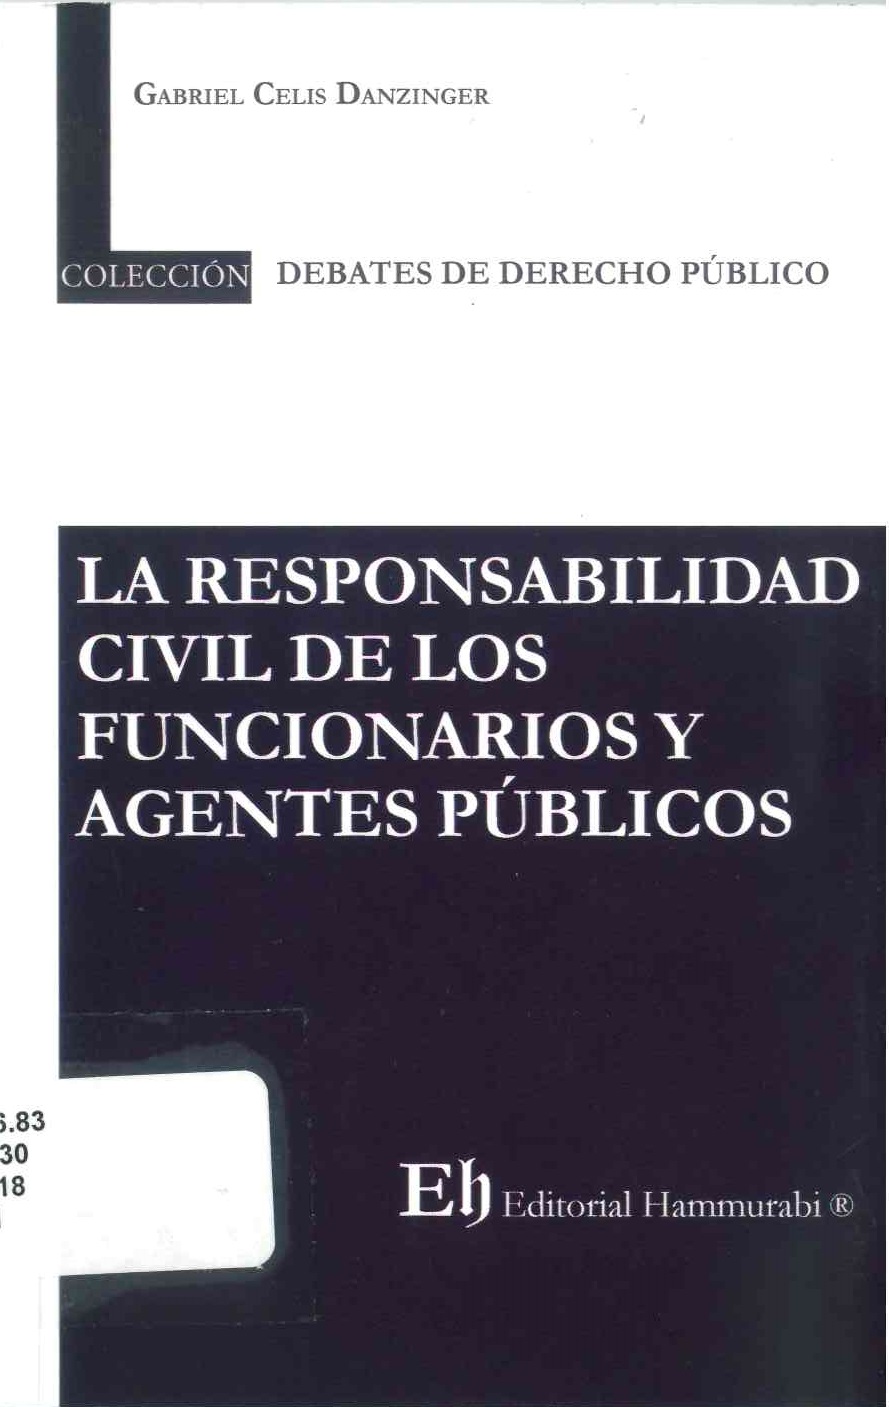 La responsabilidad civil de los funcionarios y agentes públicos